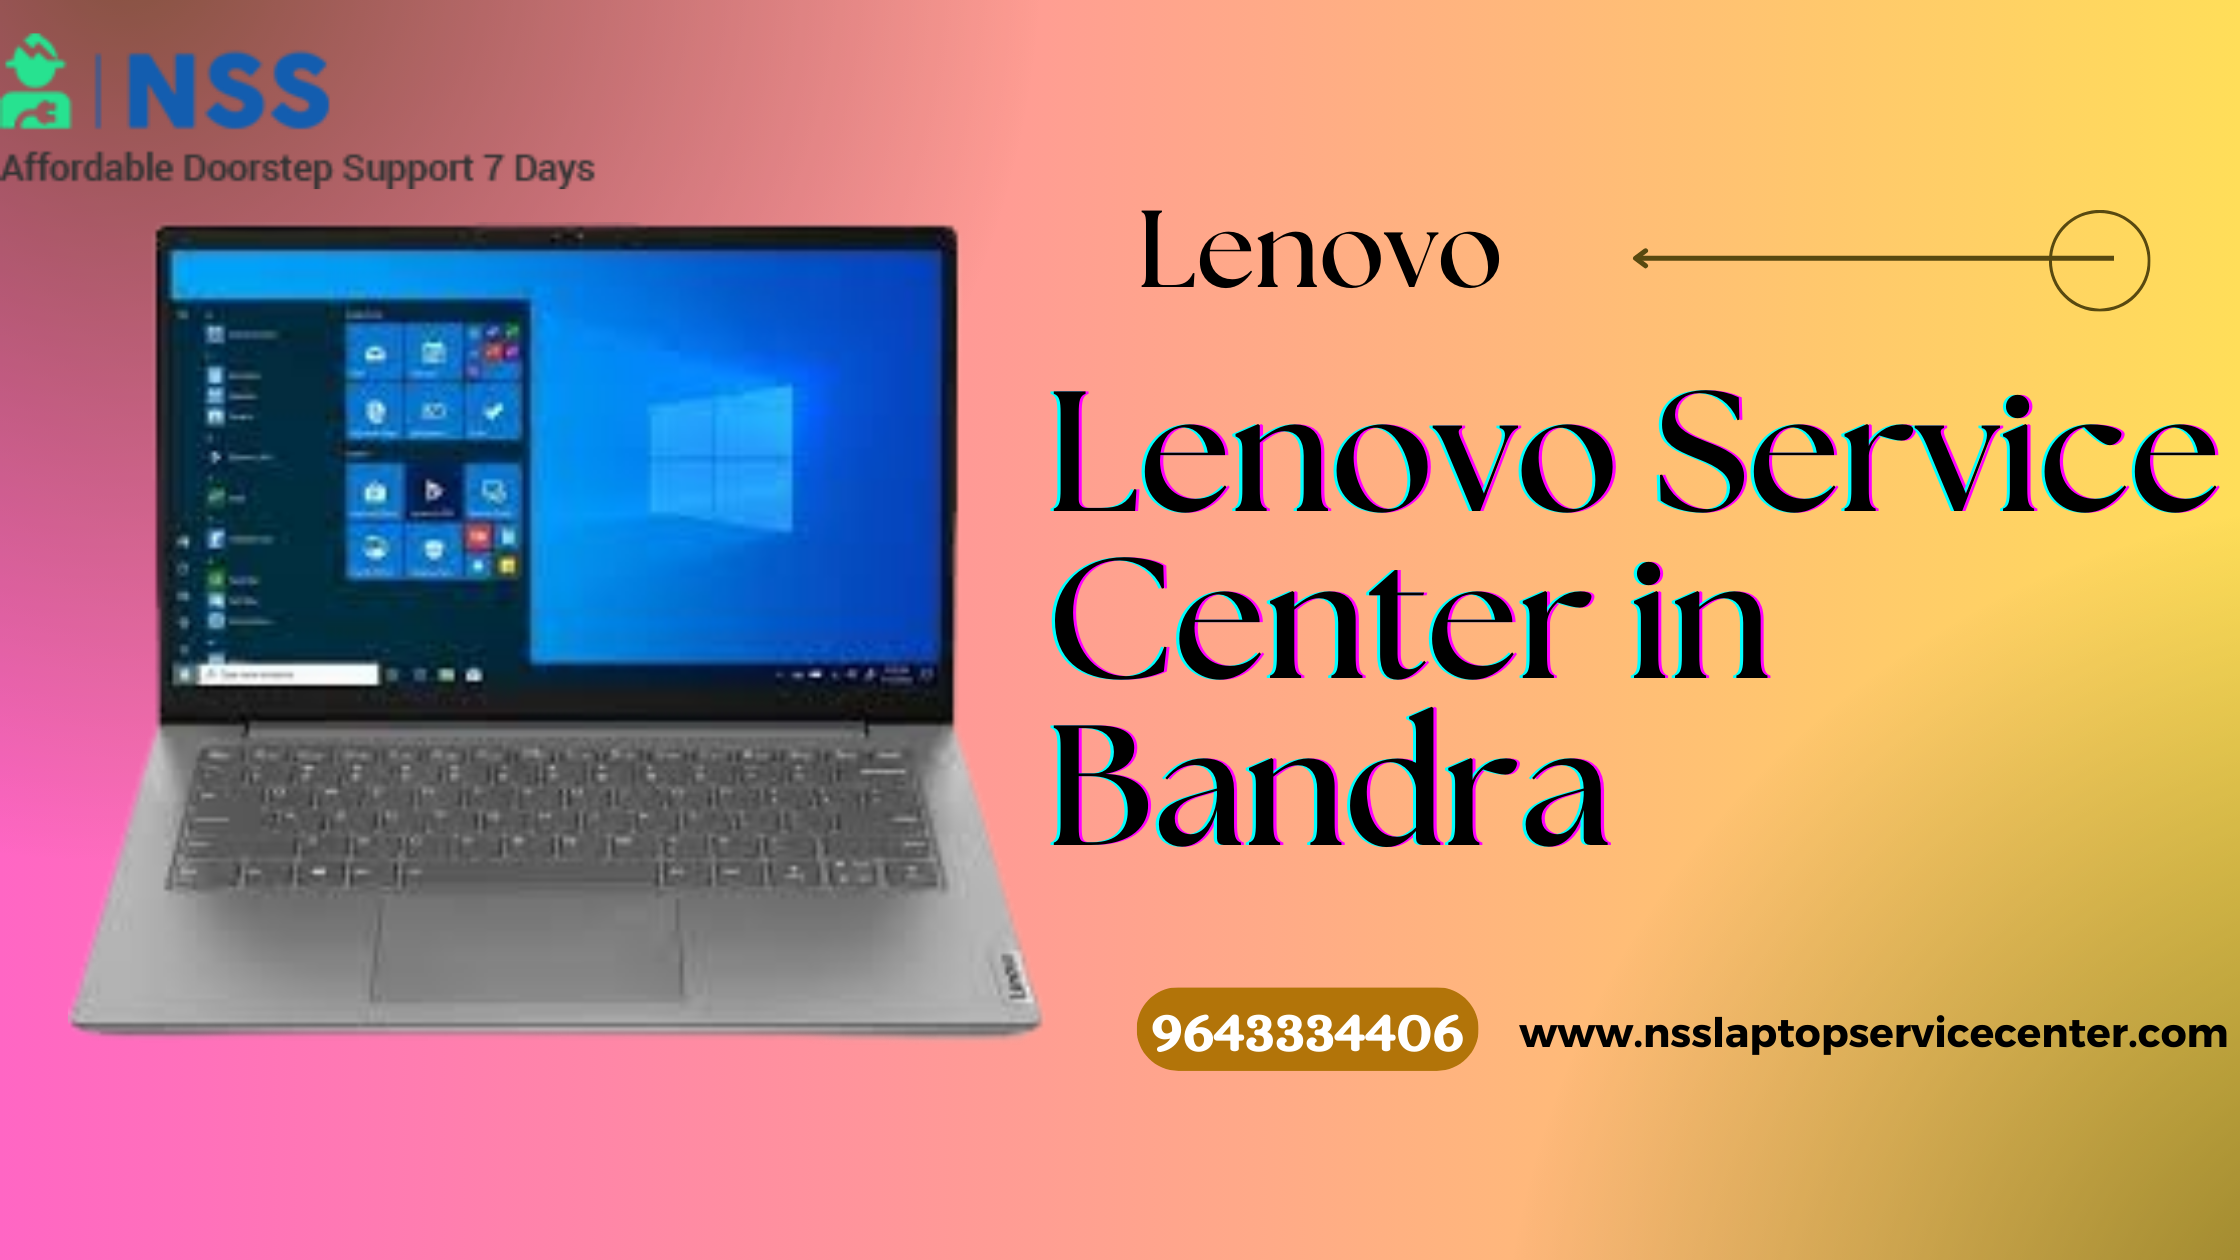 Lenovo Service Center in Bandra Near Mumbai